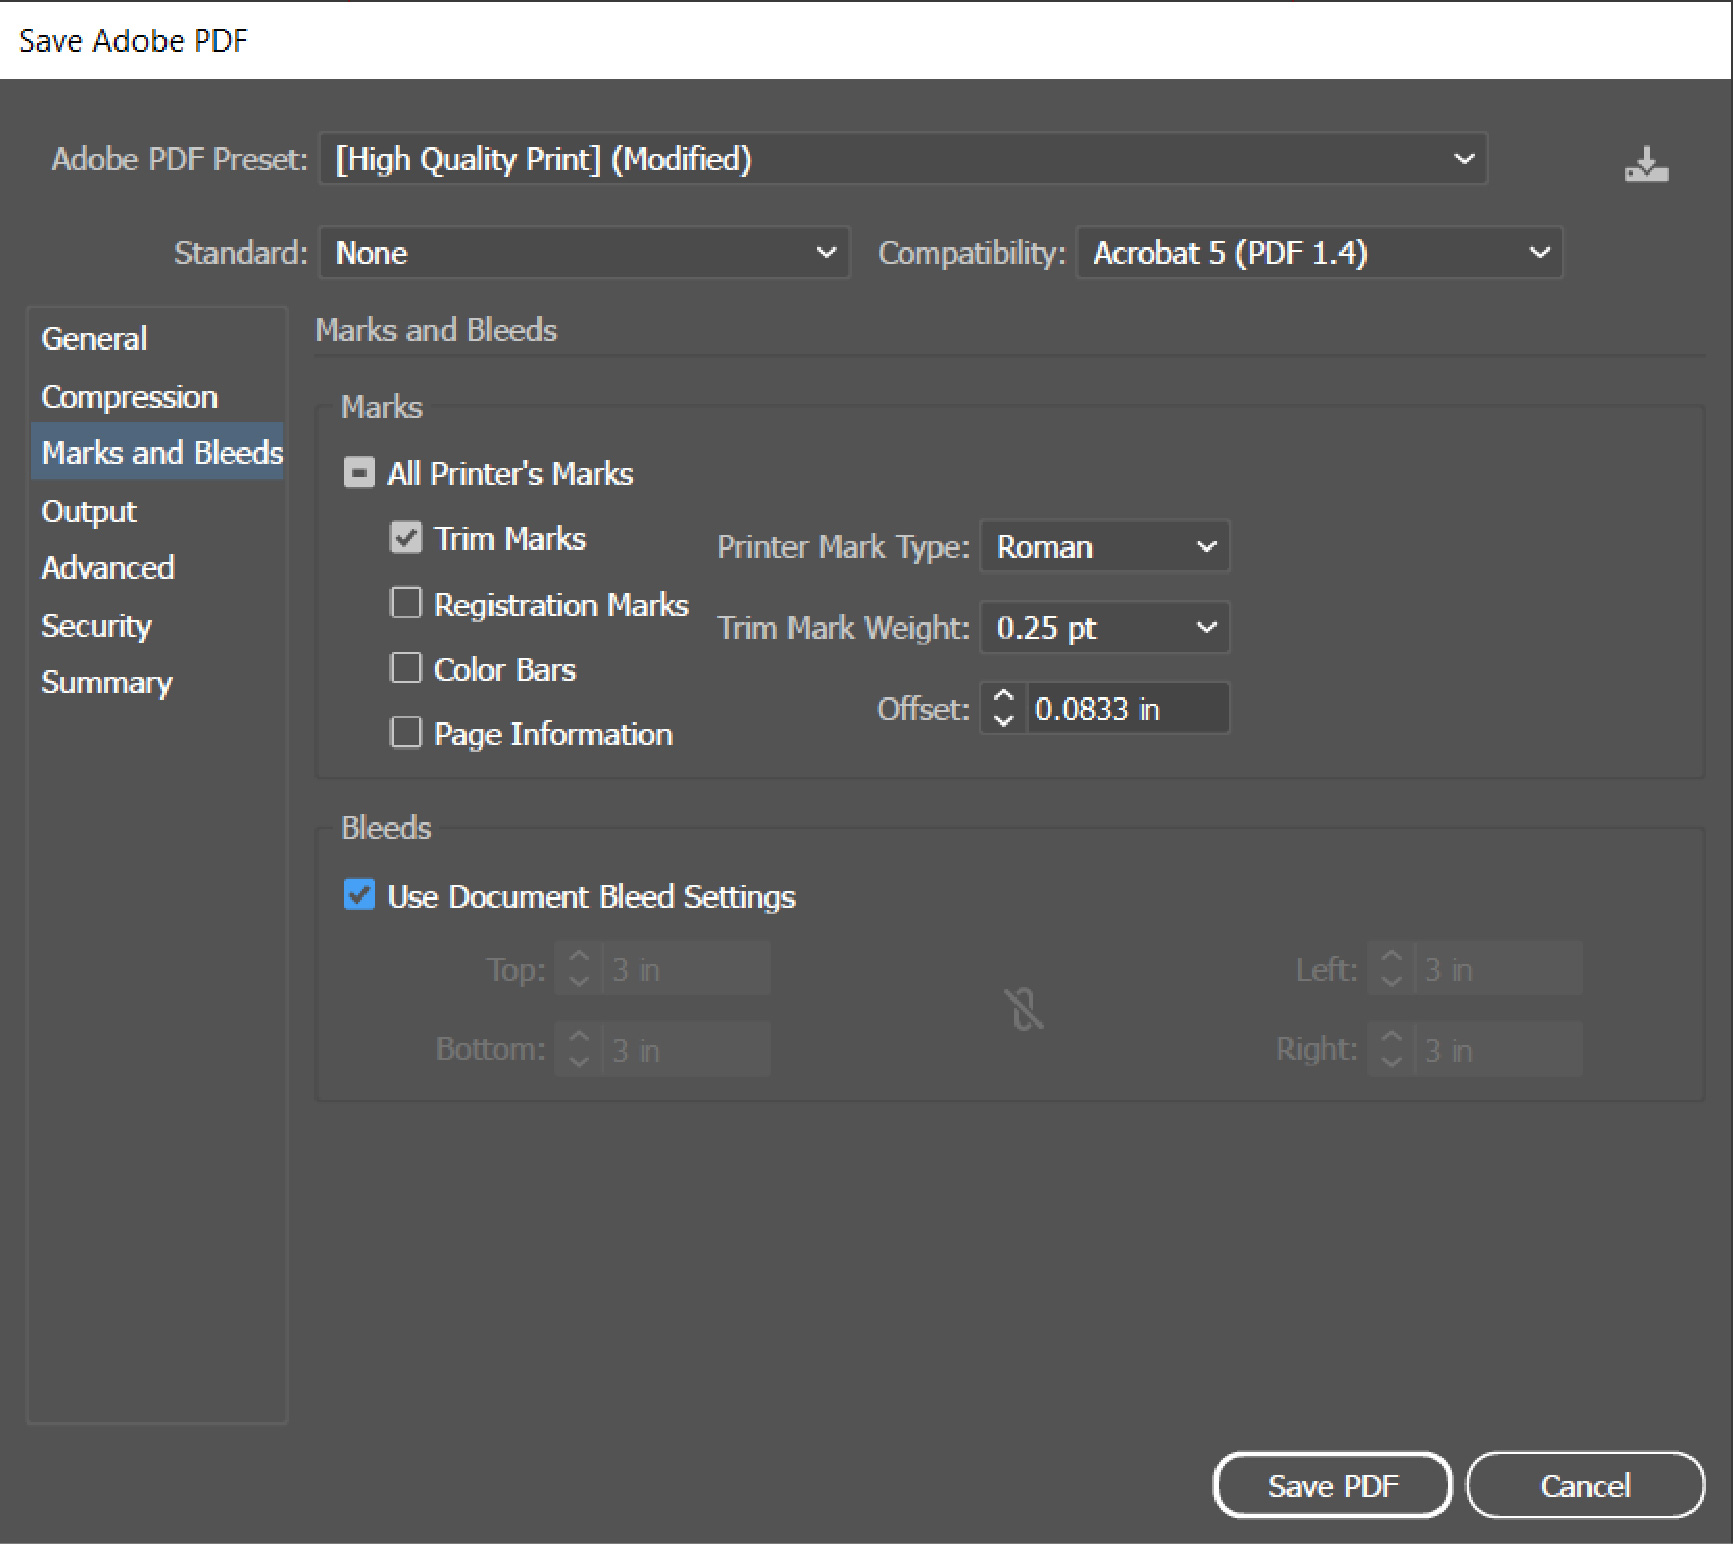 Adobe Illustrator_Print PDF Setup_Marks and Bleeds Setting selection Tab_Screenshot